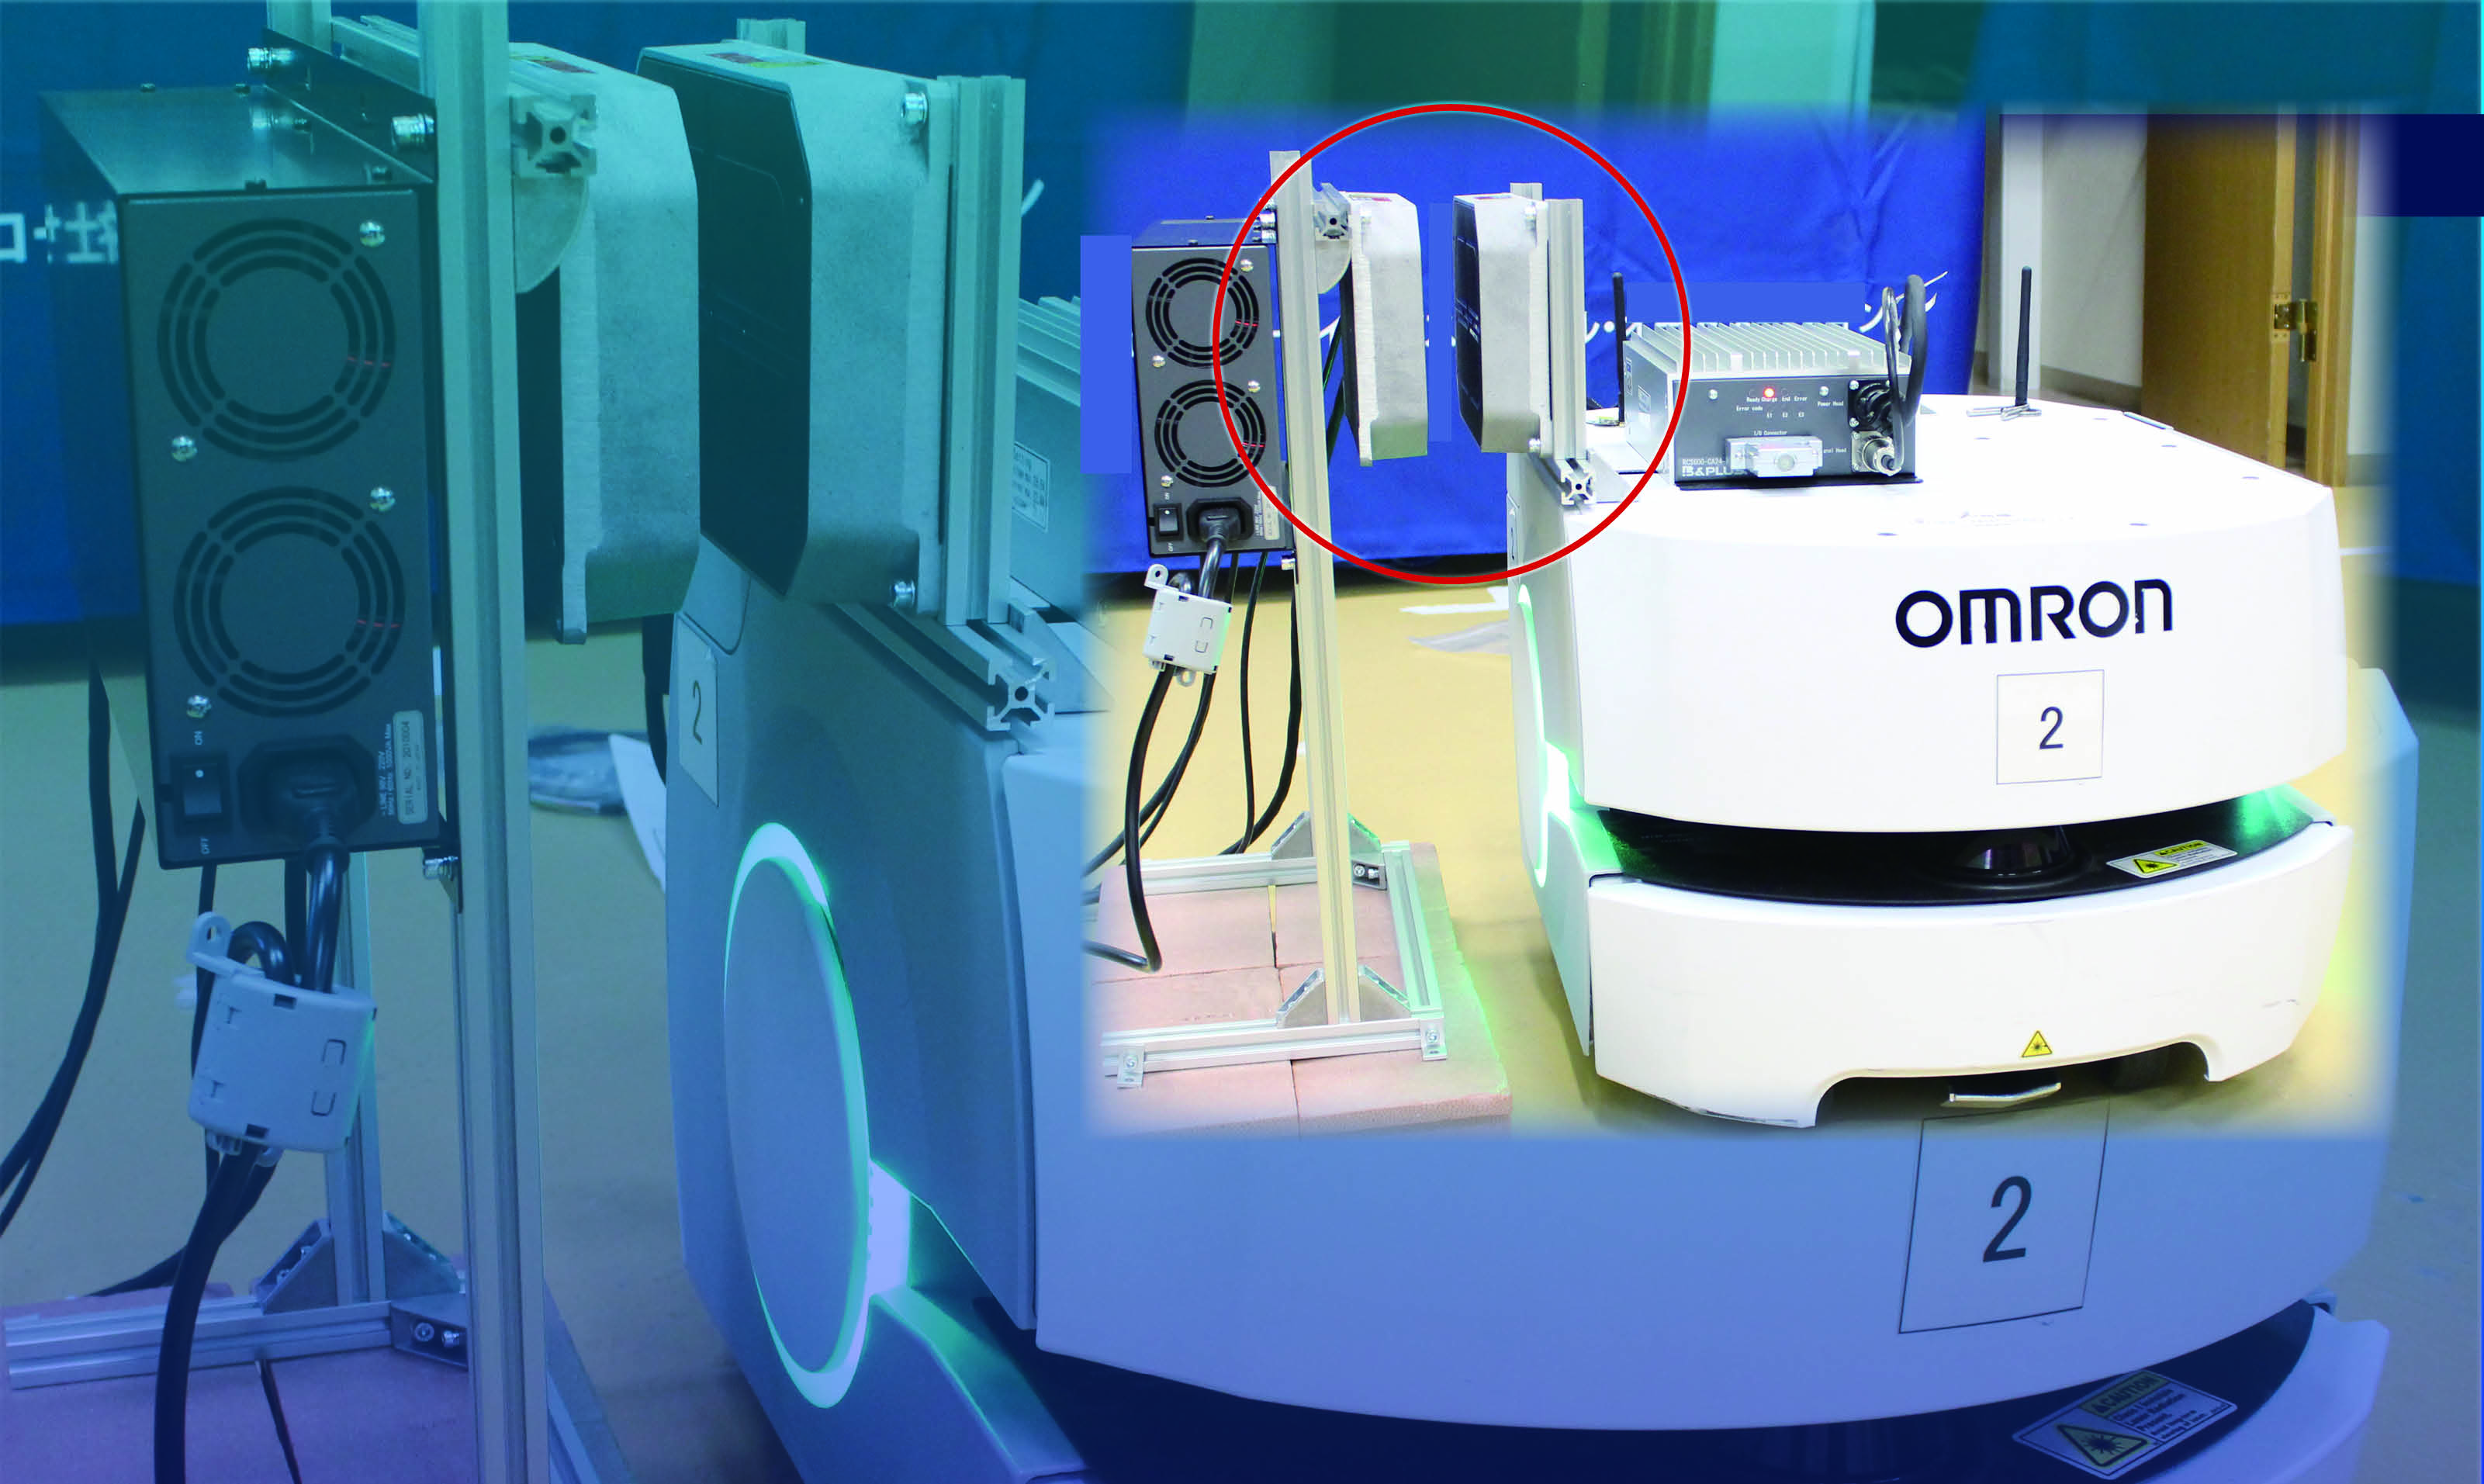 オムロン社製モバイルロボットLDシリーズへワイヤレス充電を実現しました！